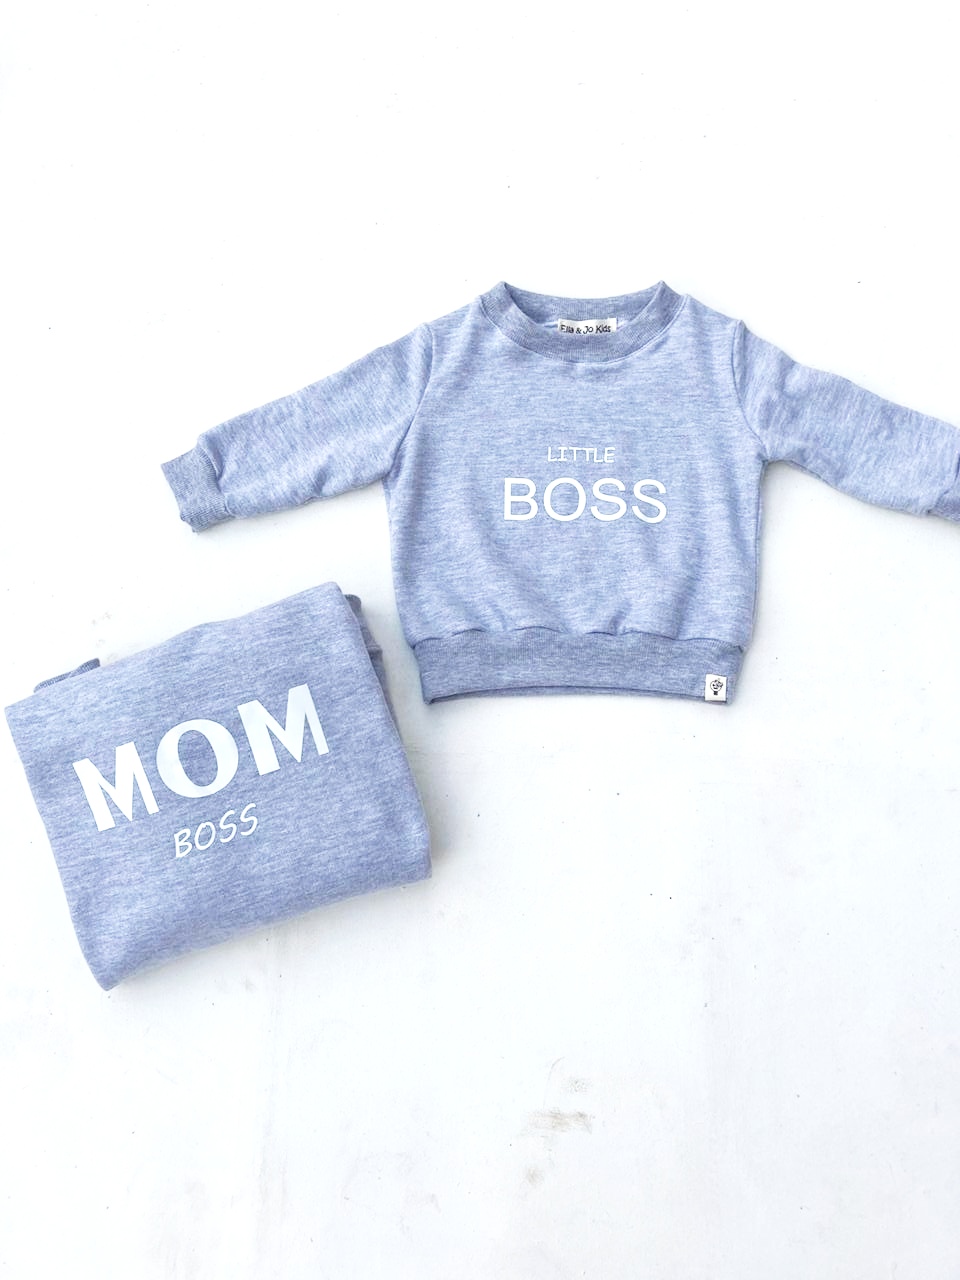 Mom Boss Little Boss Sweatshirt Set - Kids